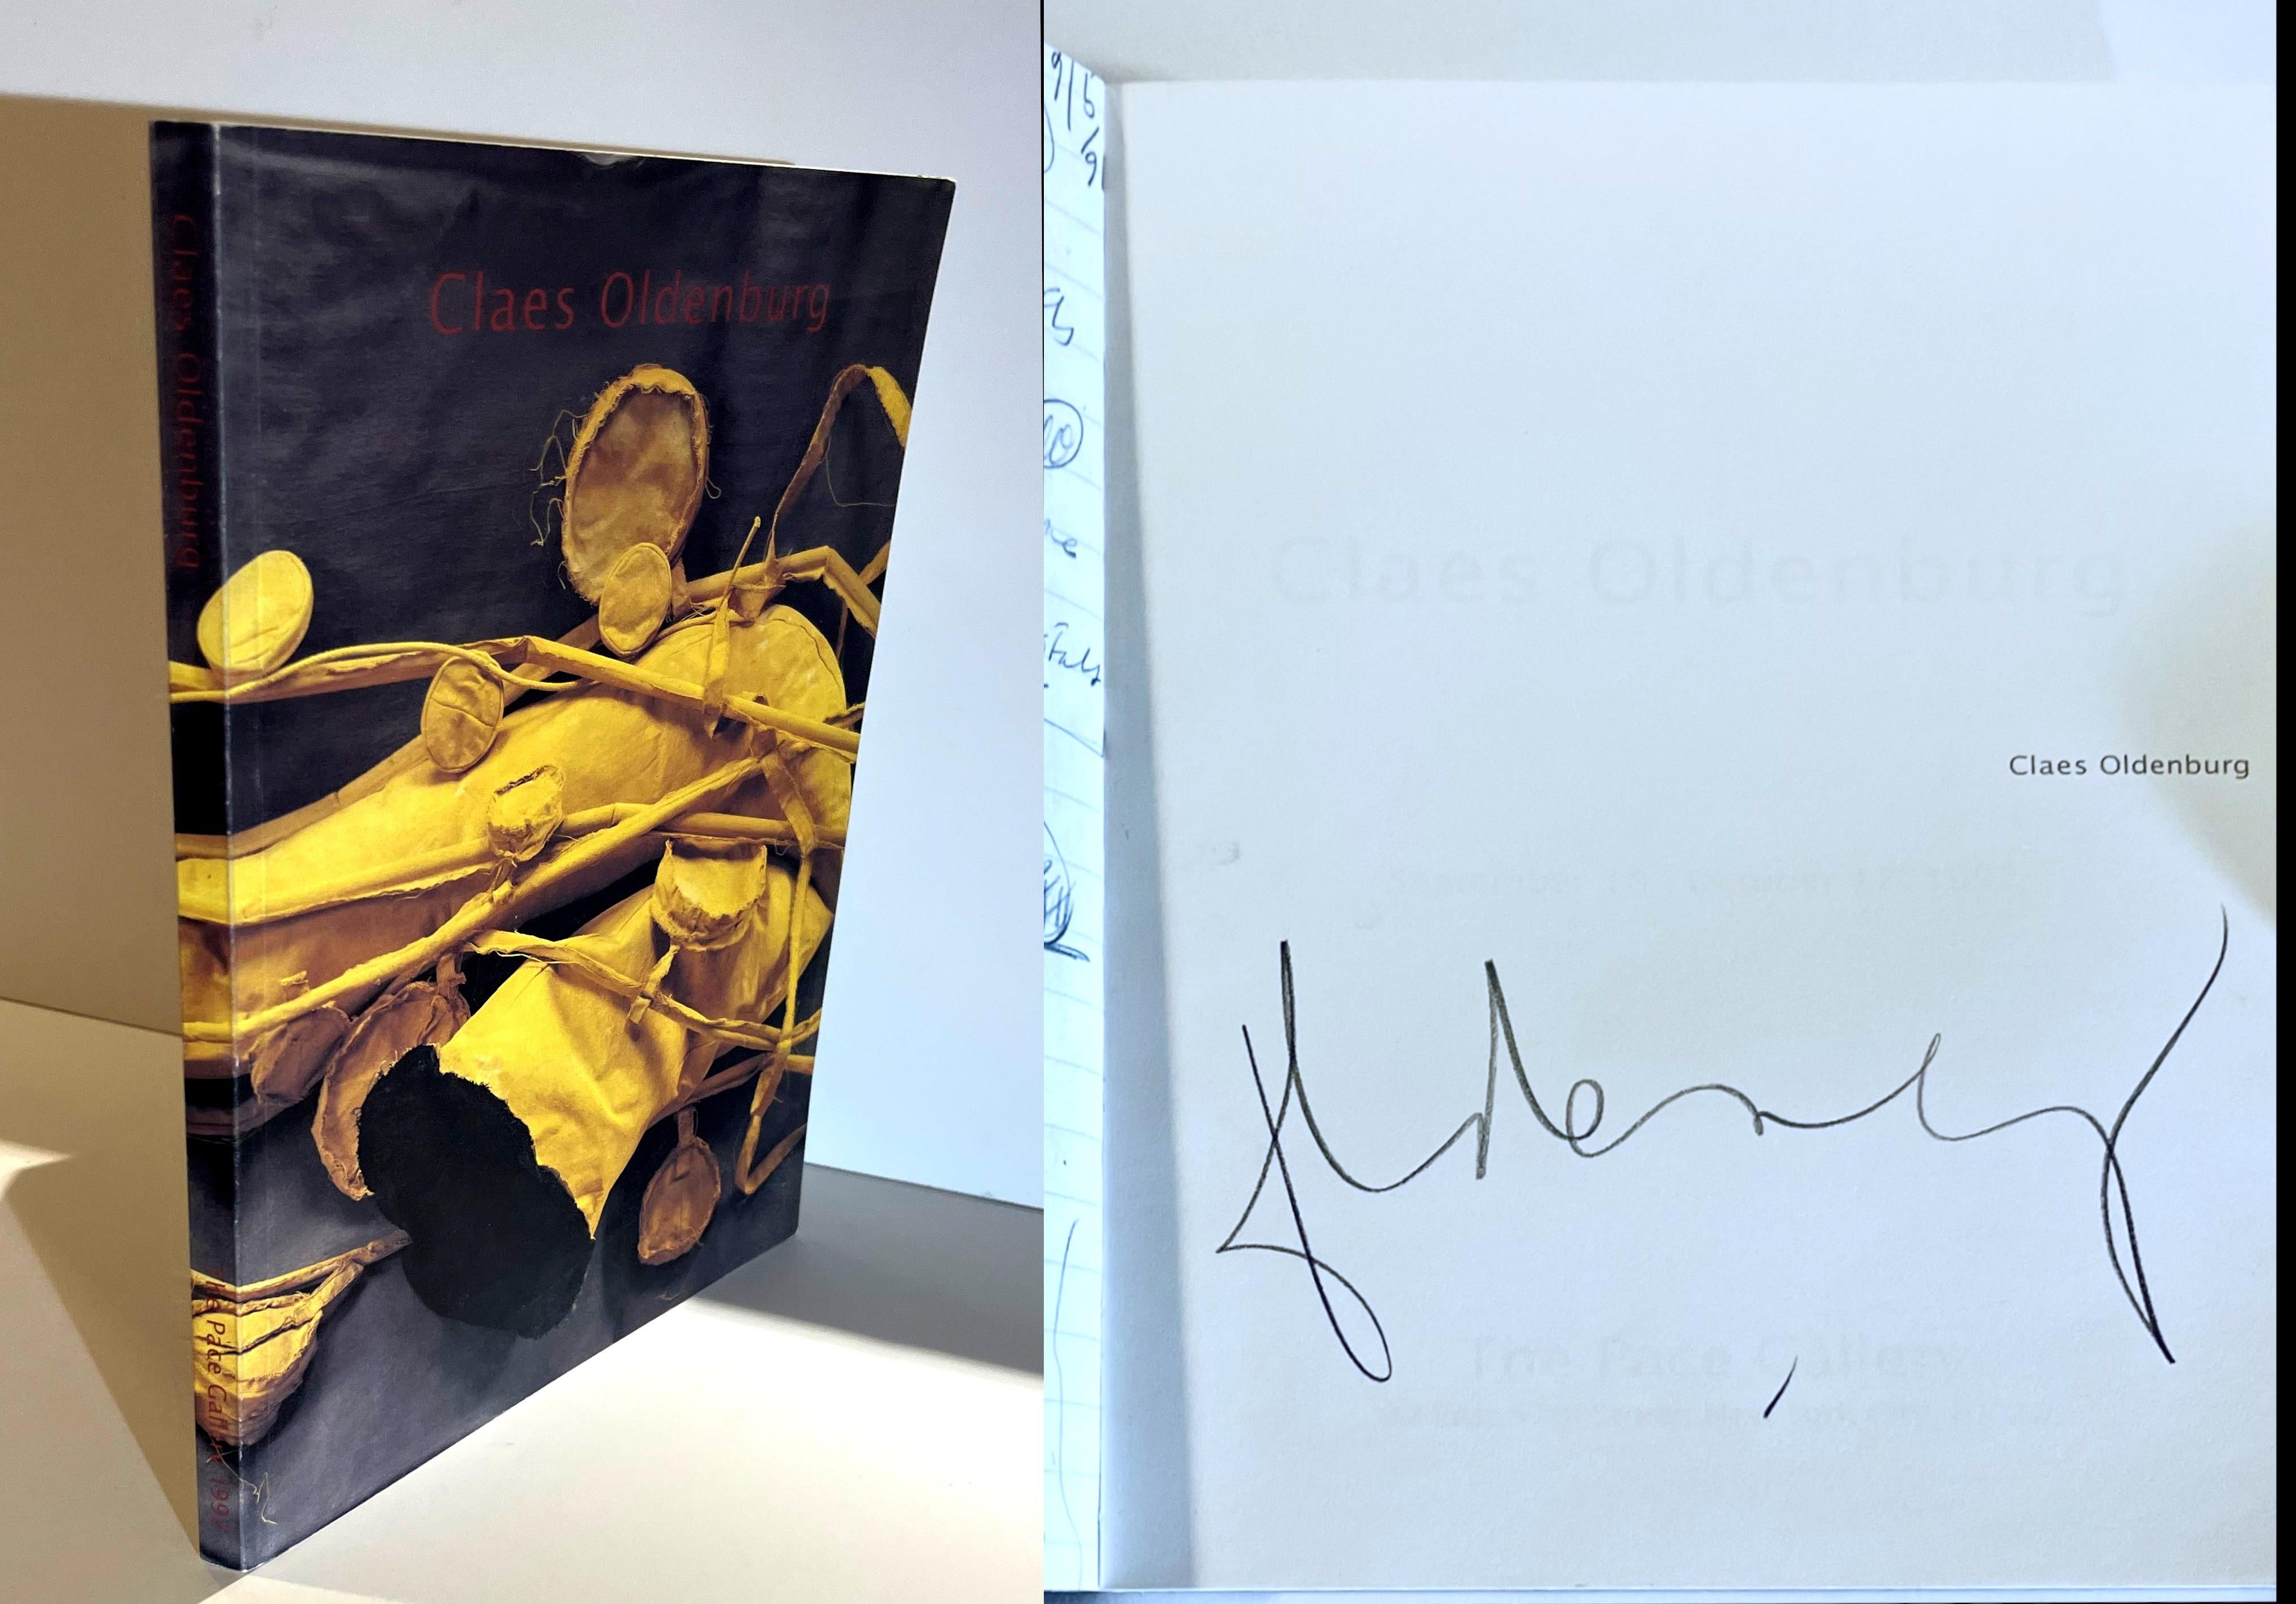 Claes Oldenburg, Claes Oldenburg (signé à la main par Claes Oldenburg), 1992